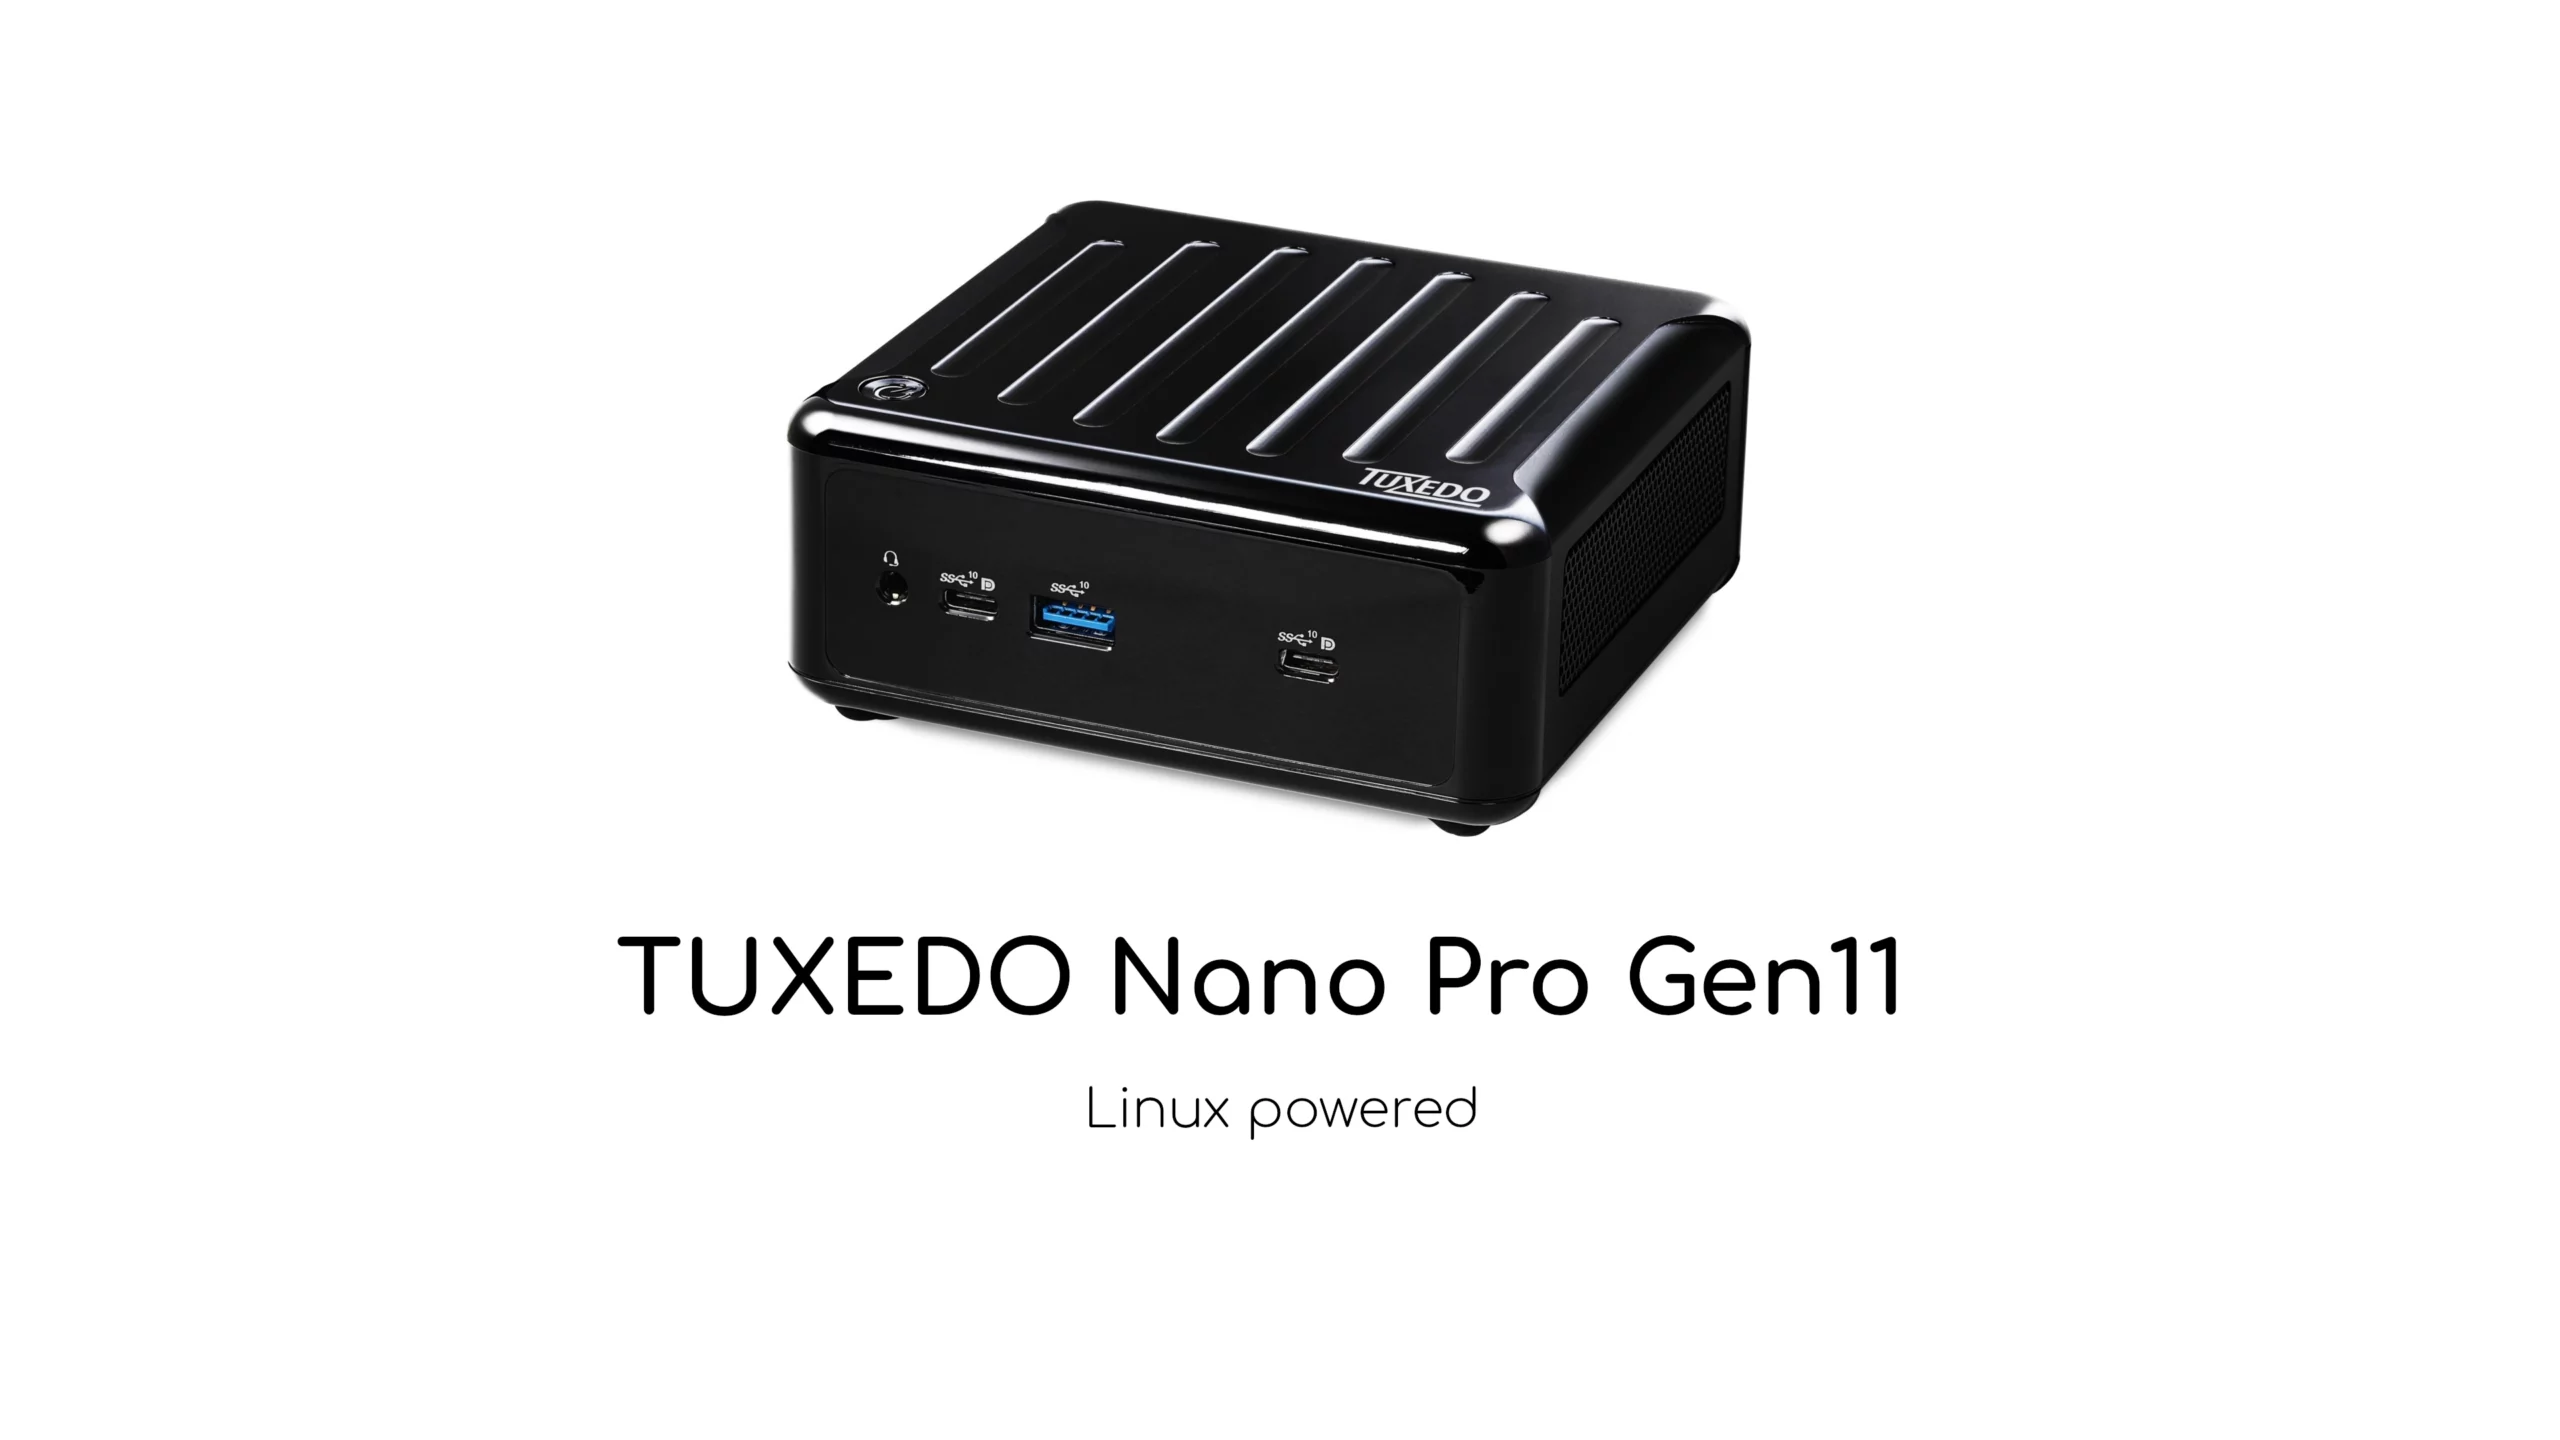 TUXEDO Nano Pro Gen11 Dubbed as the Smallest Mini Linux PC Powered by AMD Ryzen 4000U